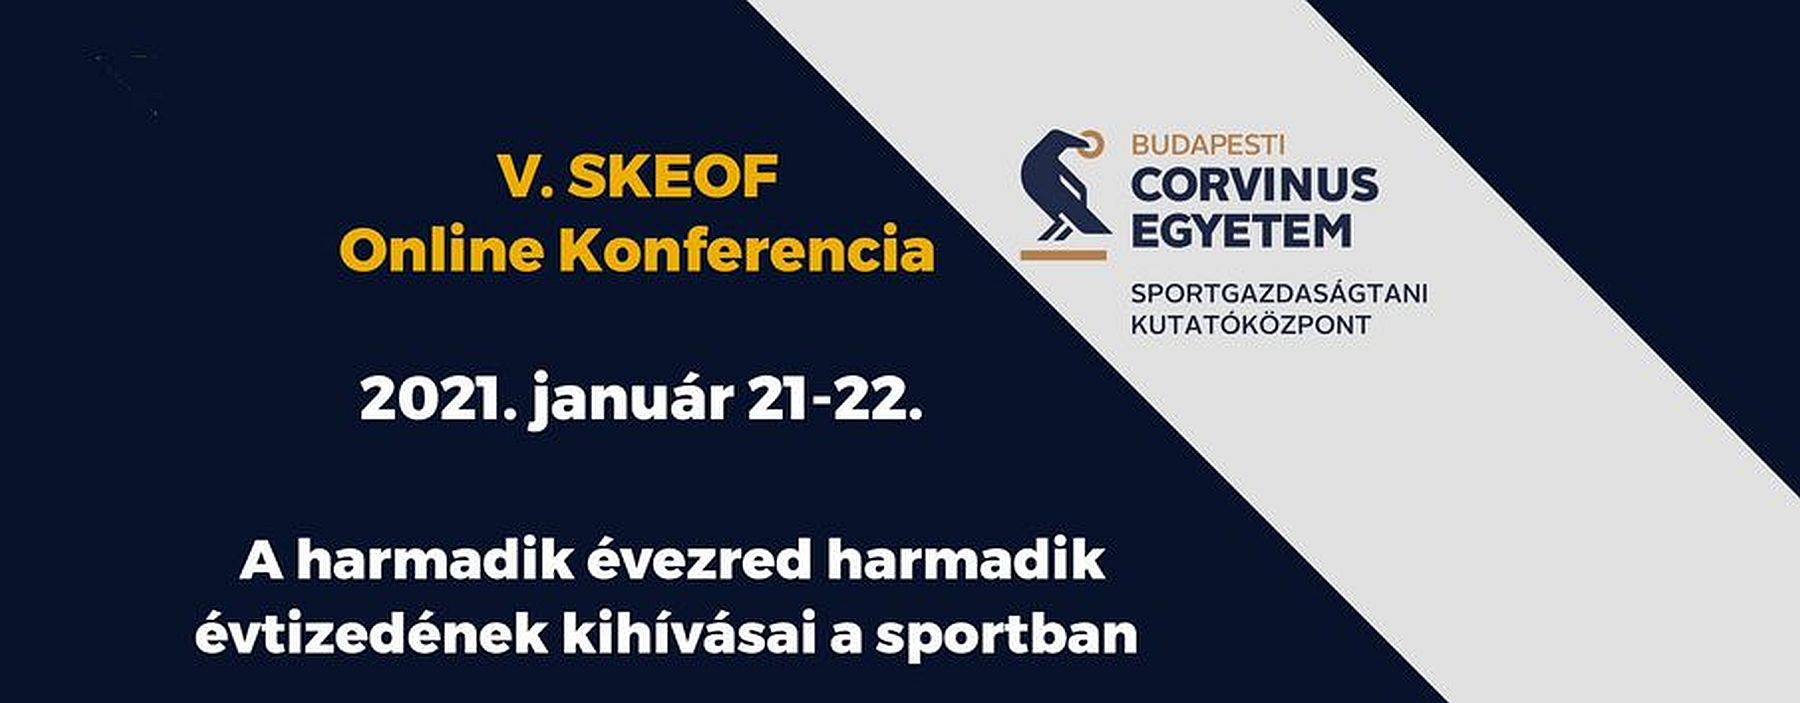 A modern sportélet kihívásai lesz az V. SKEOF konferencia témája